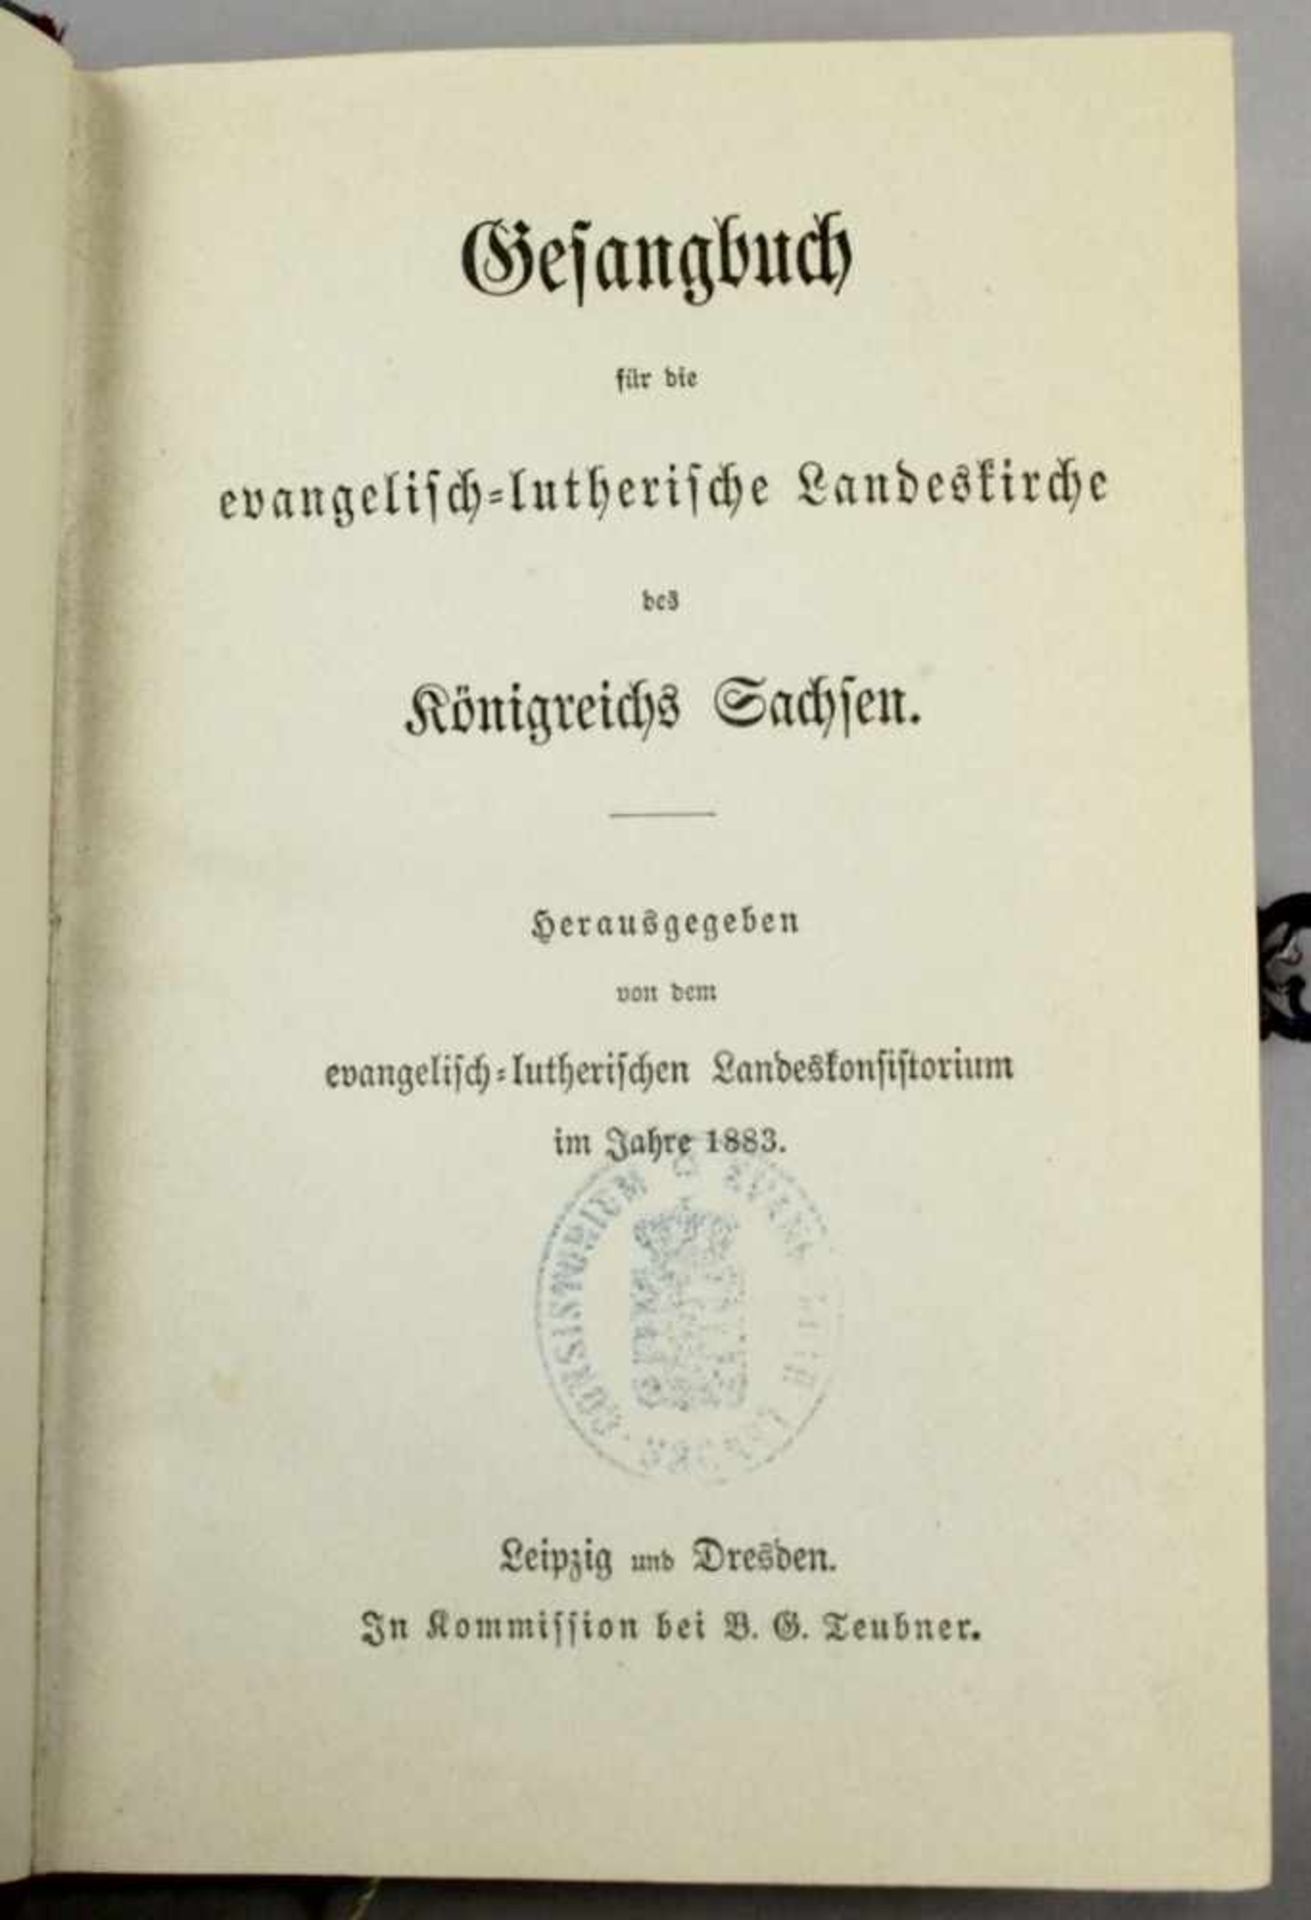 Gesangbuch, 1883, für die evangelisch-lutherische Landeskirche des Königreichs Sachsen,sehr fein - Bild 2 aus 2